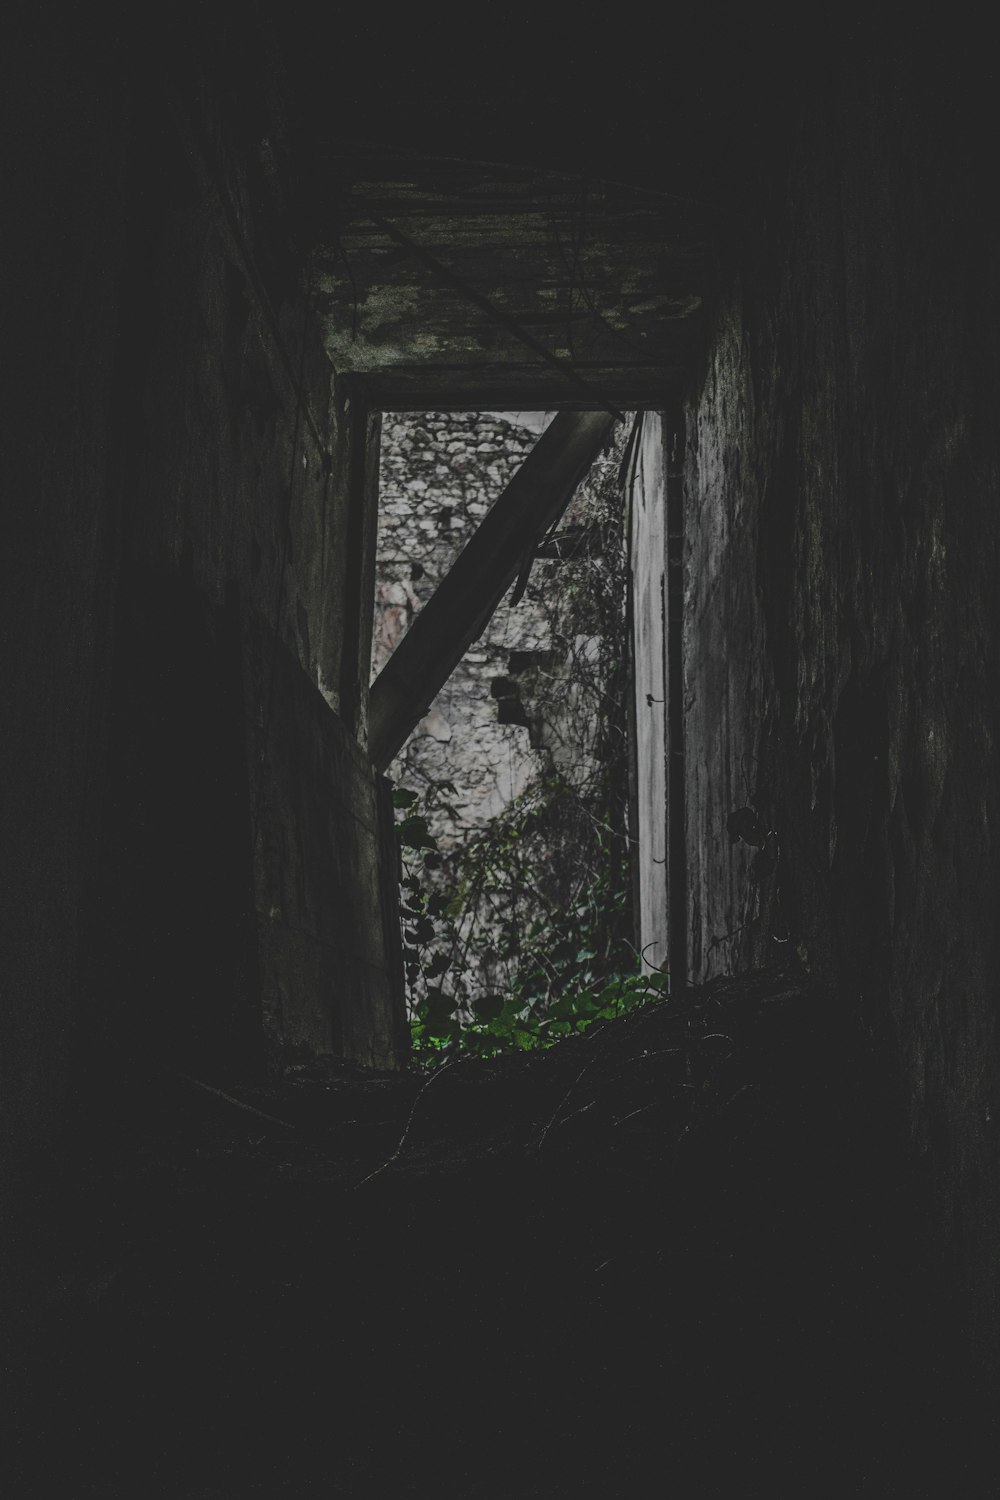 abandoned hallway